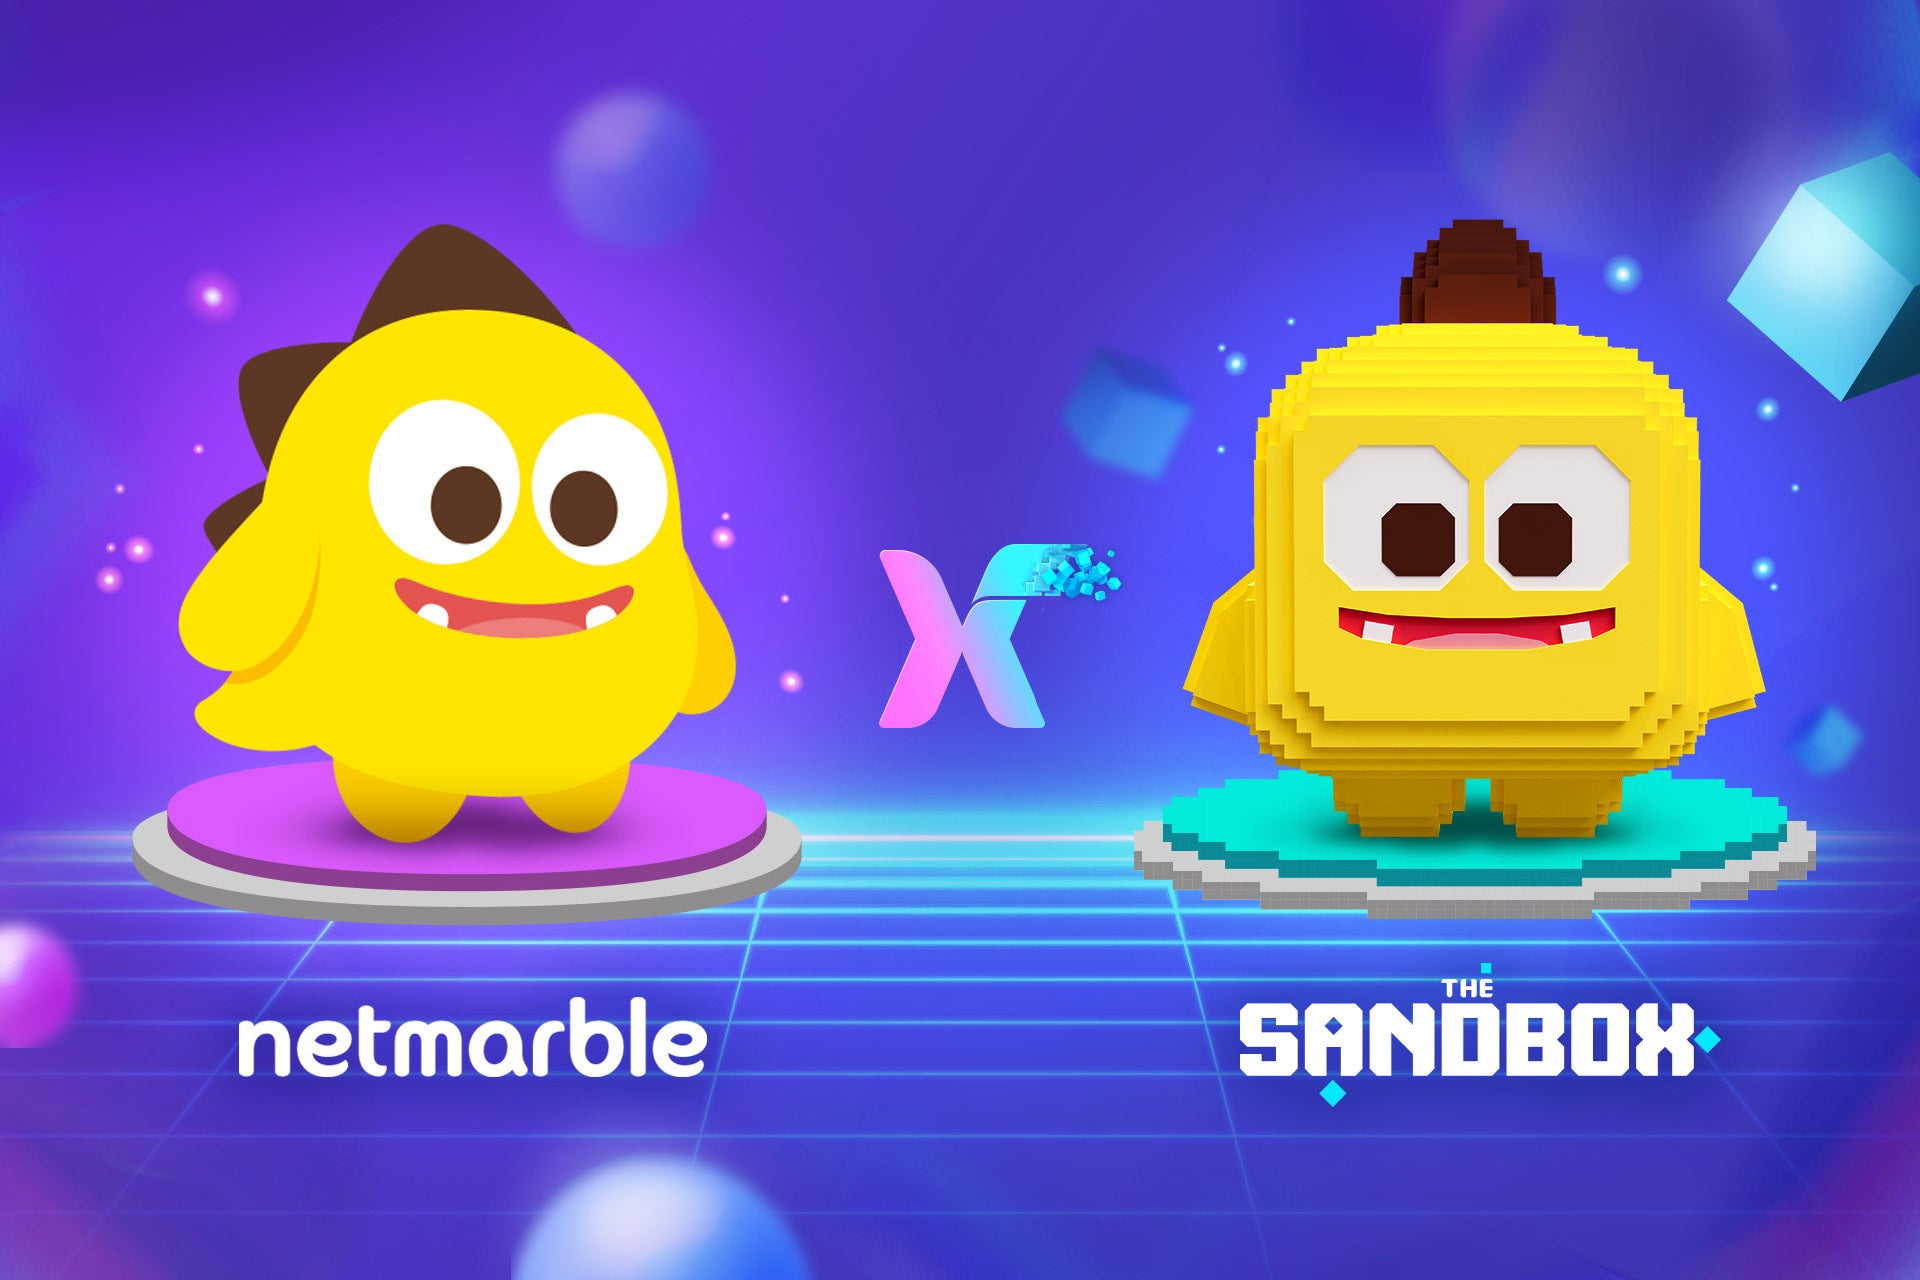 ネットマーブル、『The Sandbox』と戦略的パートナーシップを締結し、新たなメタバースコンテンツと体験を創出